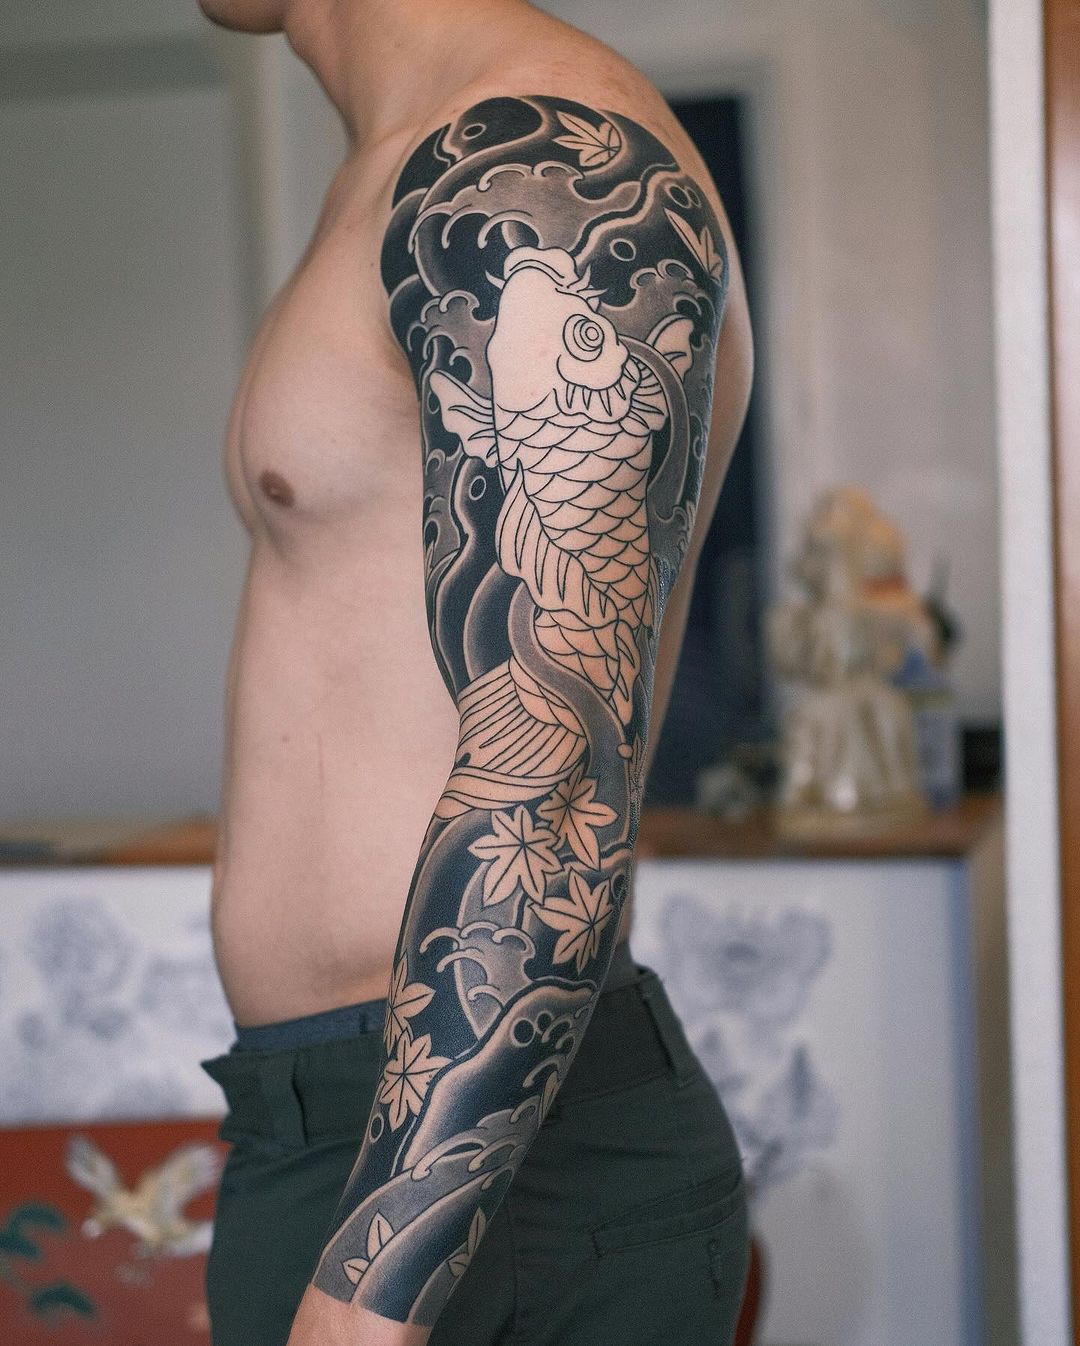 Black and grey fish tattoo by lilb wabori